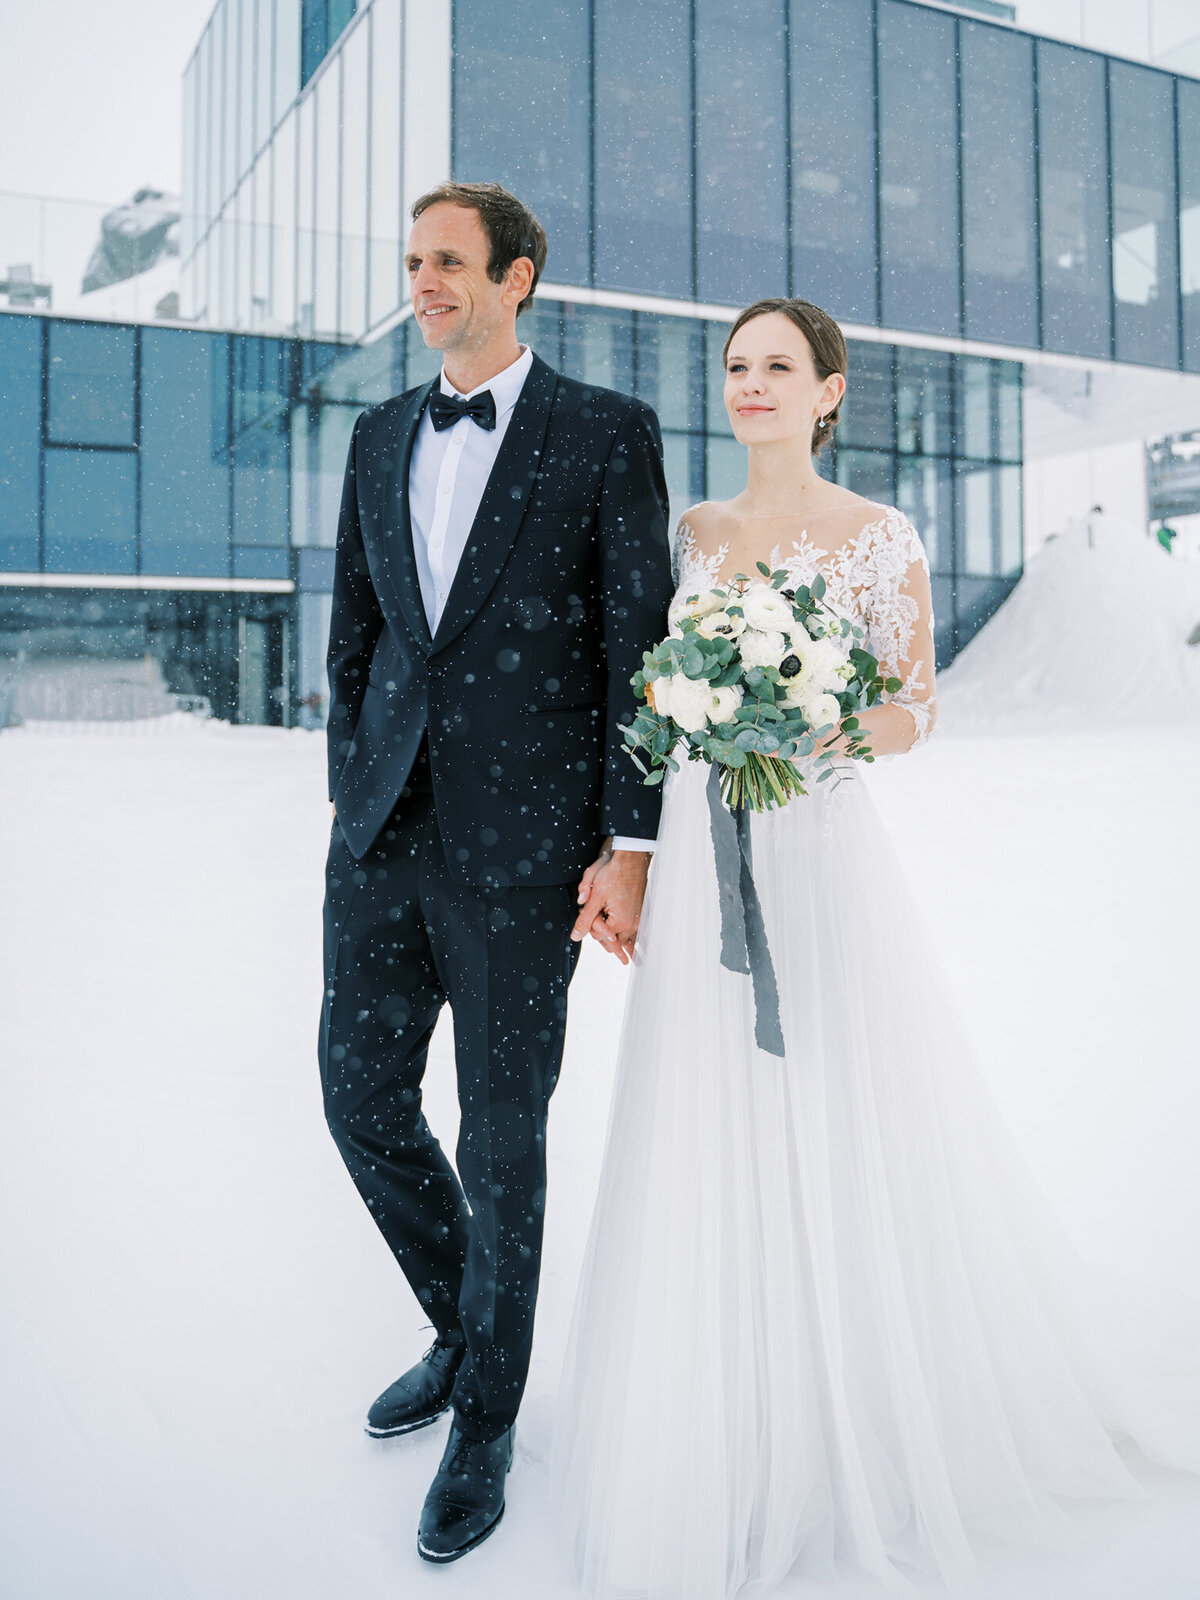 35-Elegant-Winter-Wedding-by-Tony-Gigov-Photography